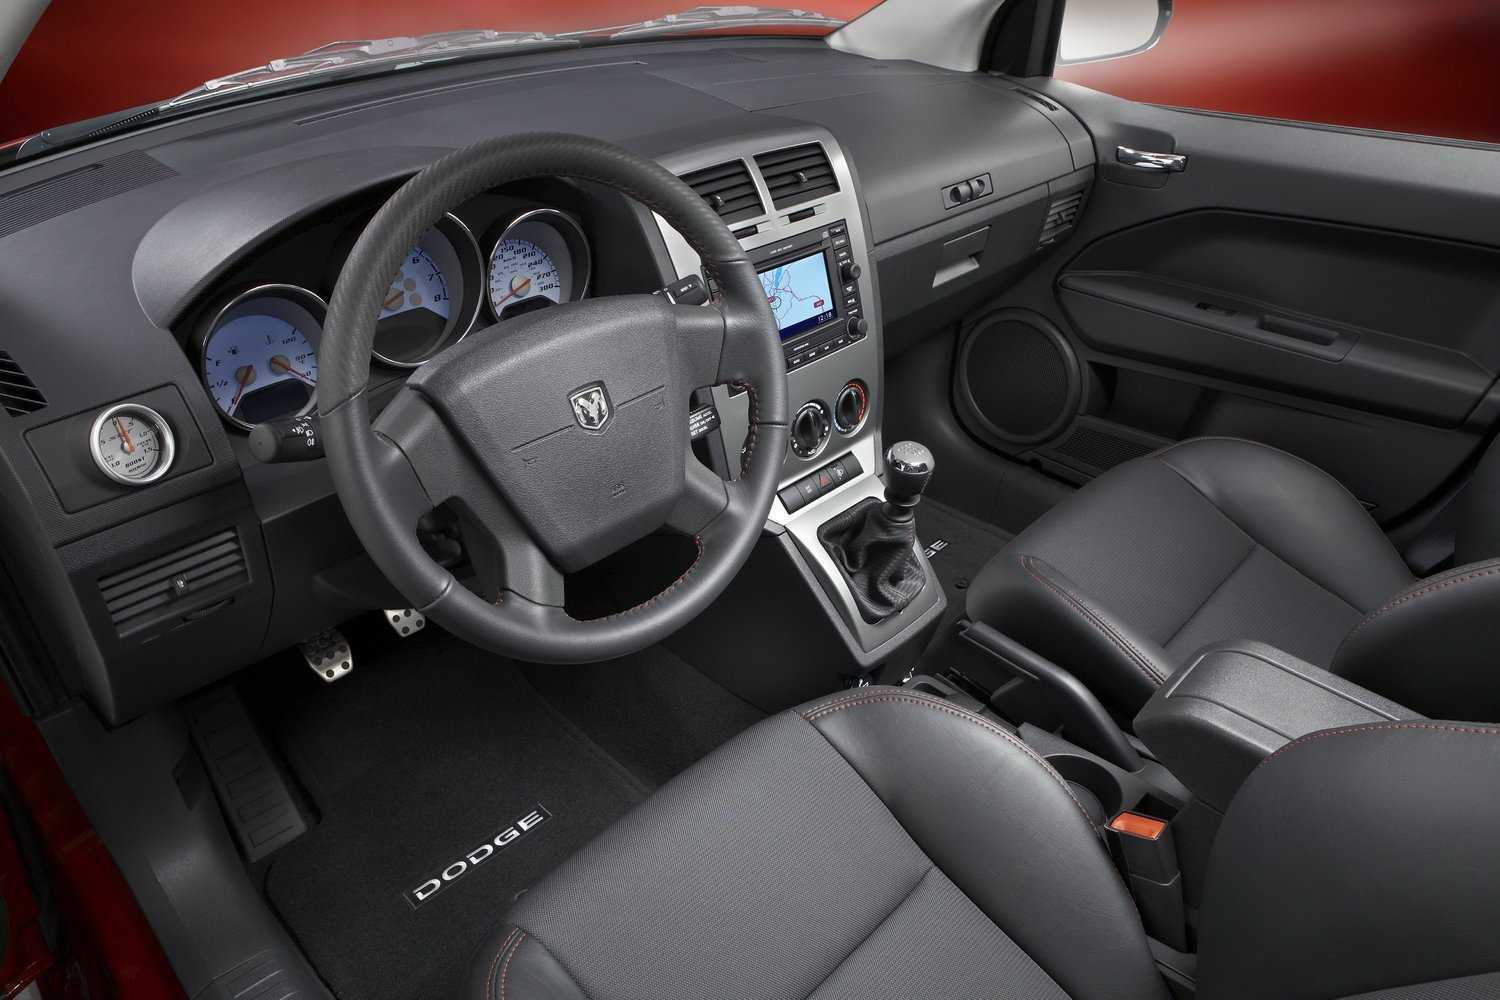 Dodge Caliber, обзор автомобиля Додж Калибр, двигатель, привод, внешний вид